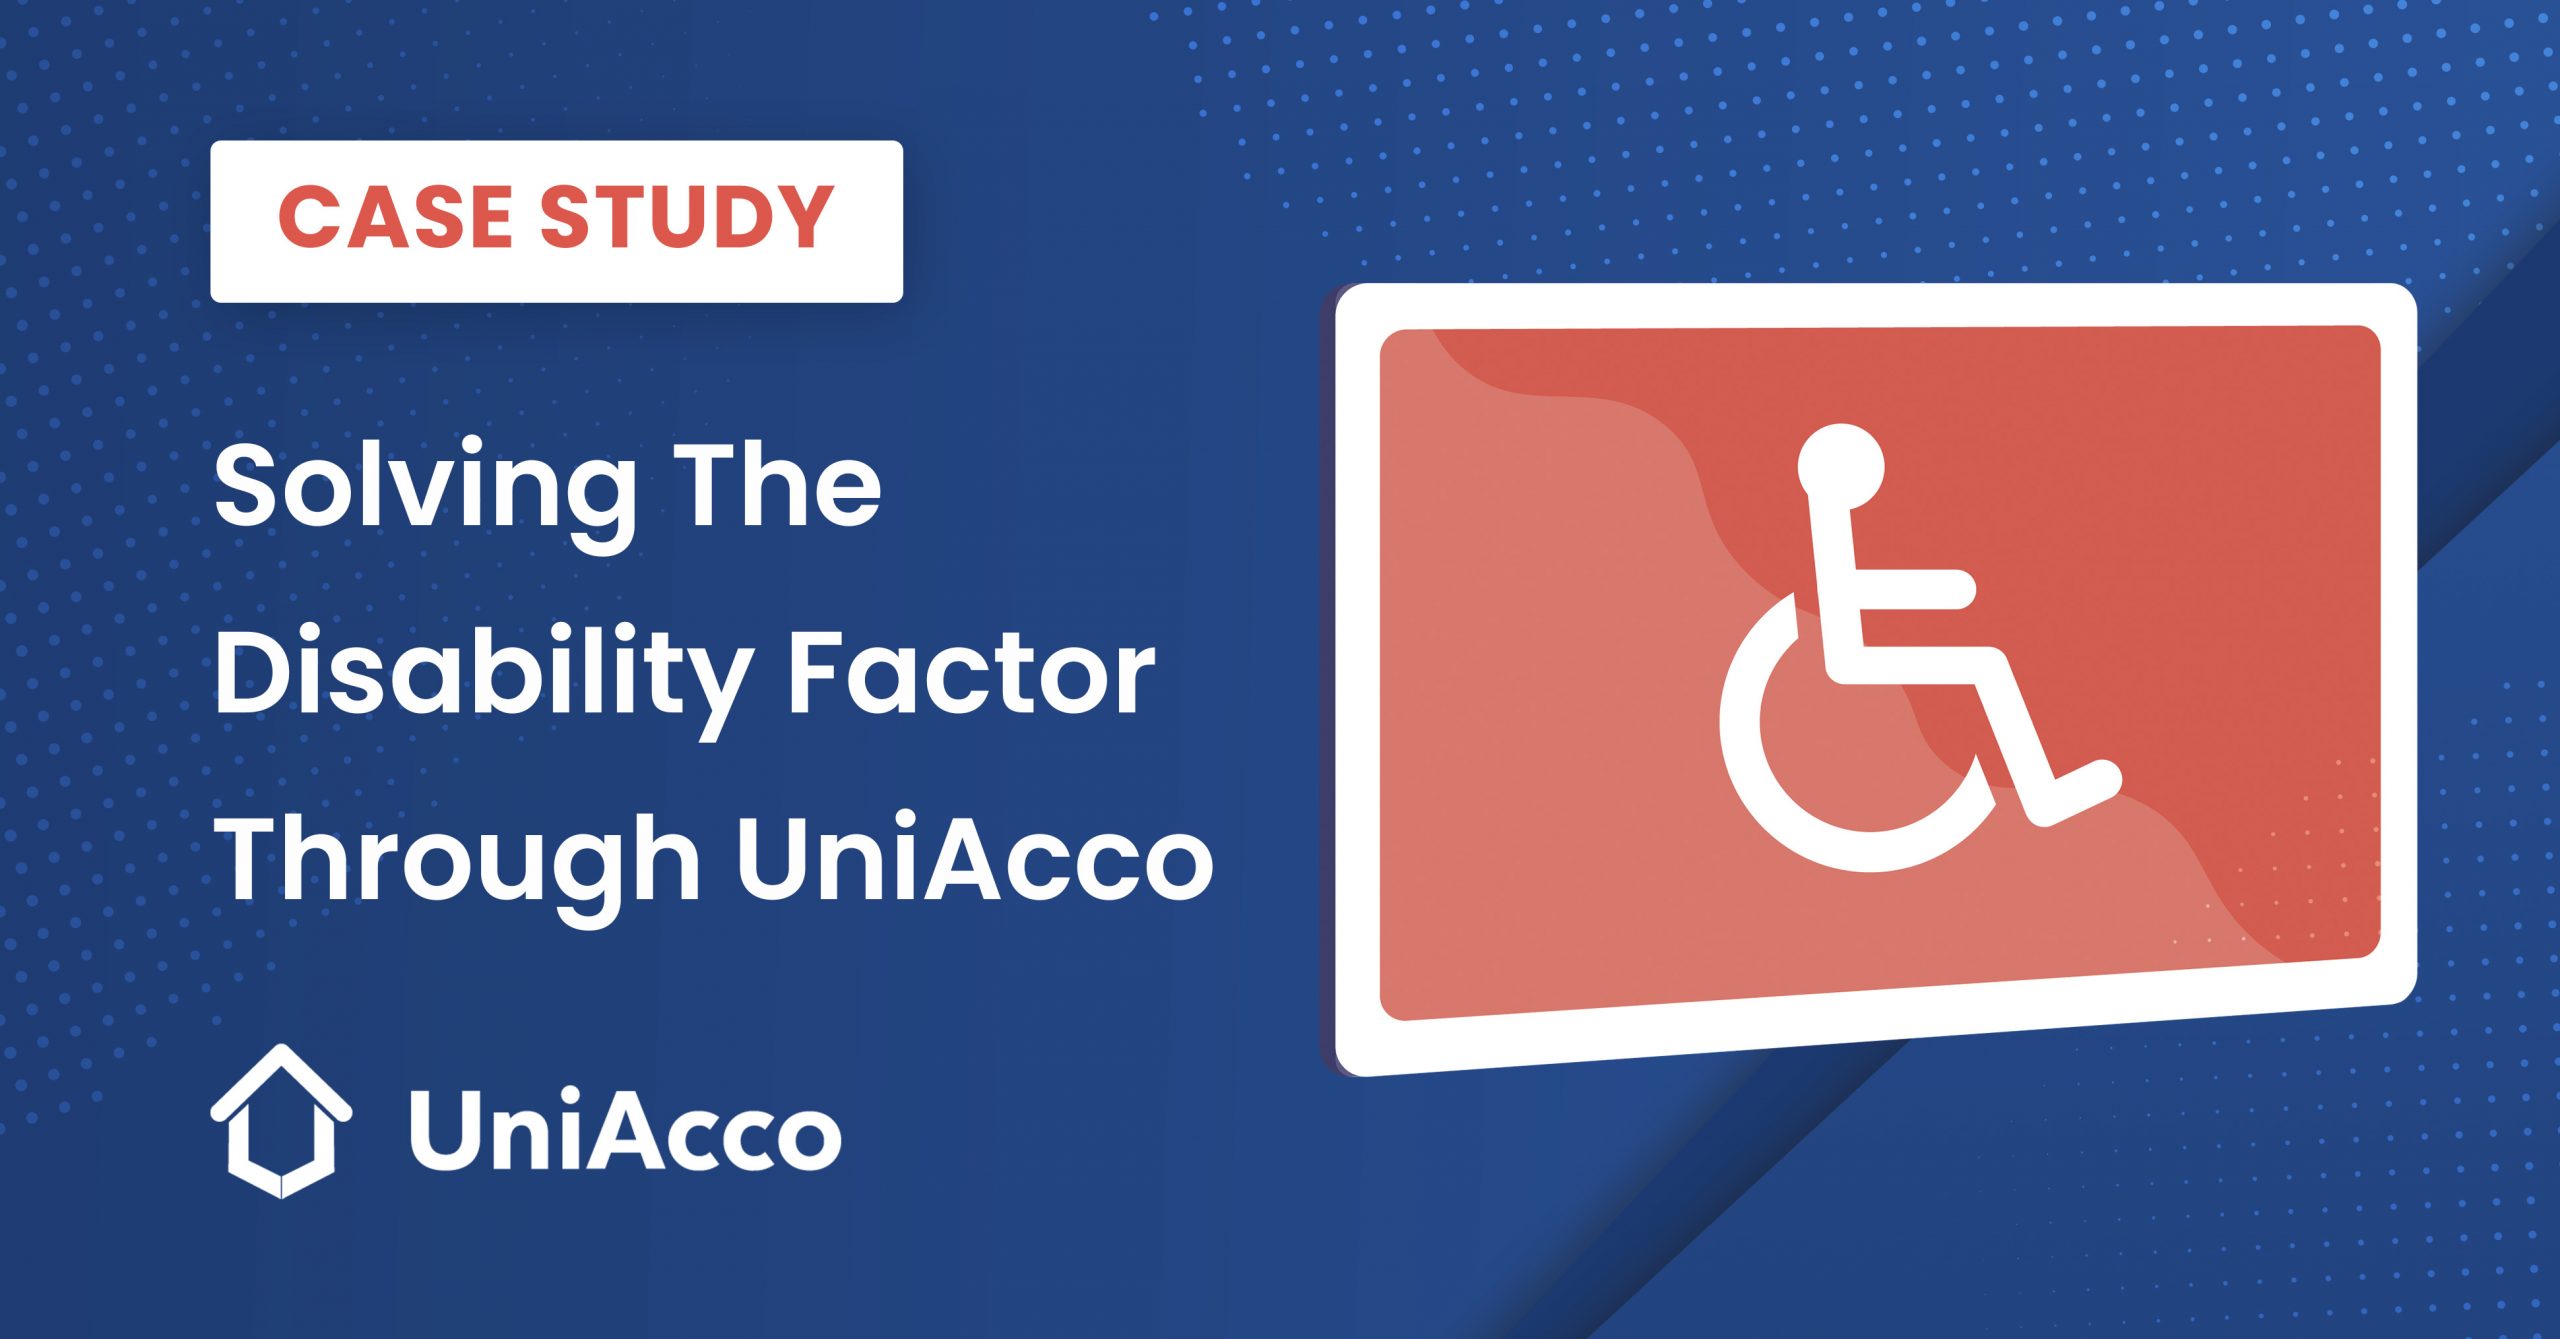 UniAcco Case study